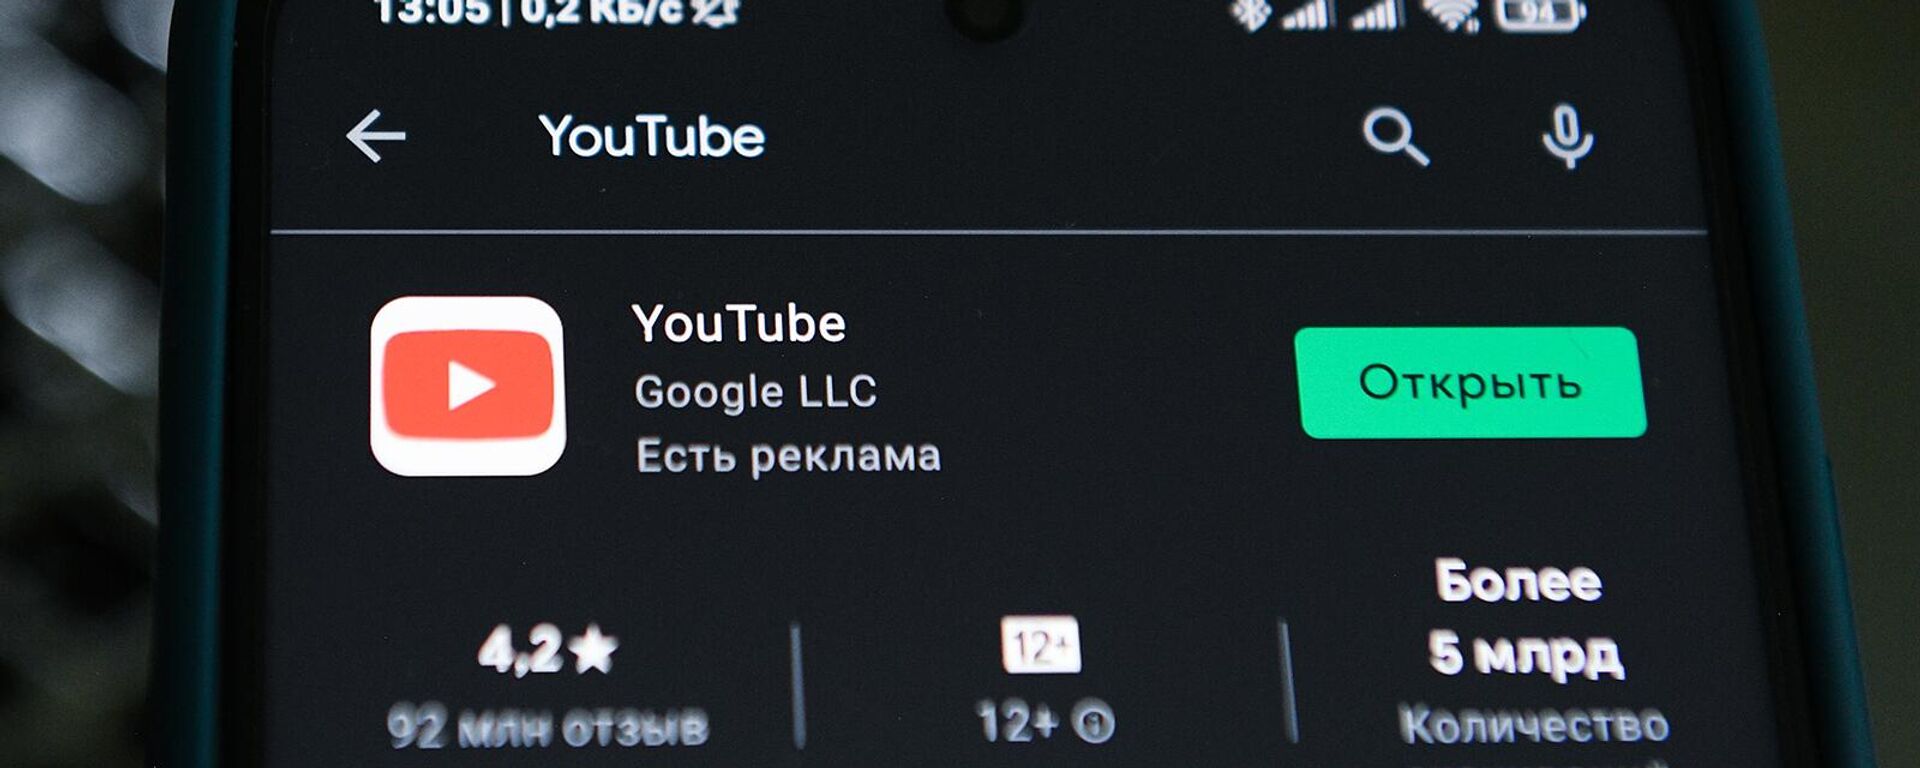 Приложение видеохостинга YouTube в телефоне - Sputnik Армения, 1920, 27.01.2021